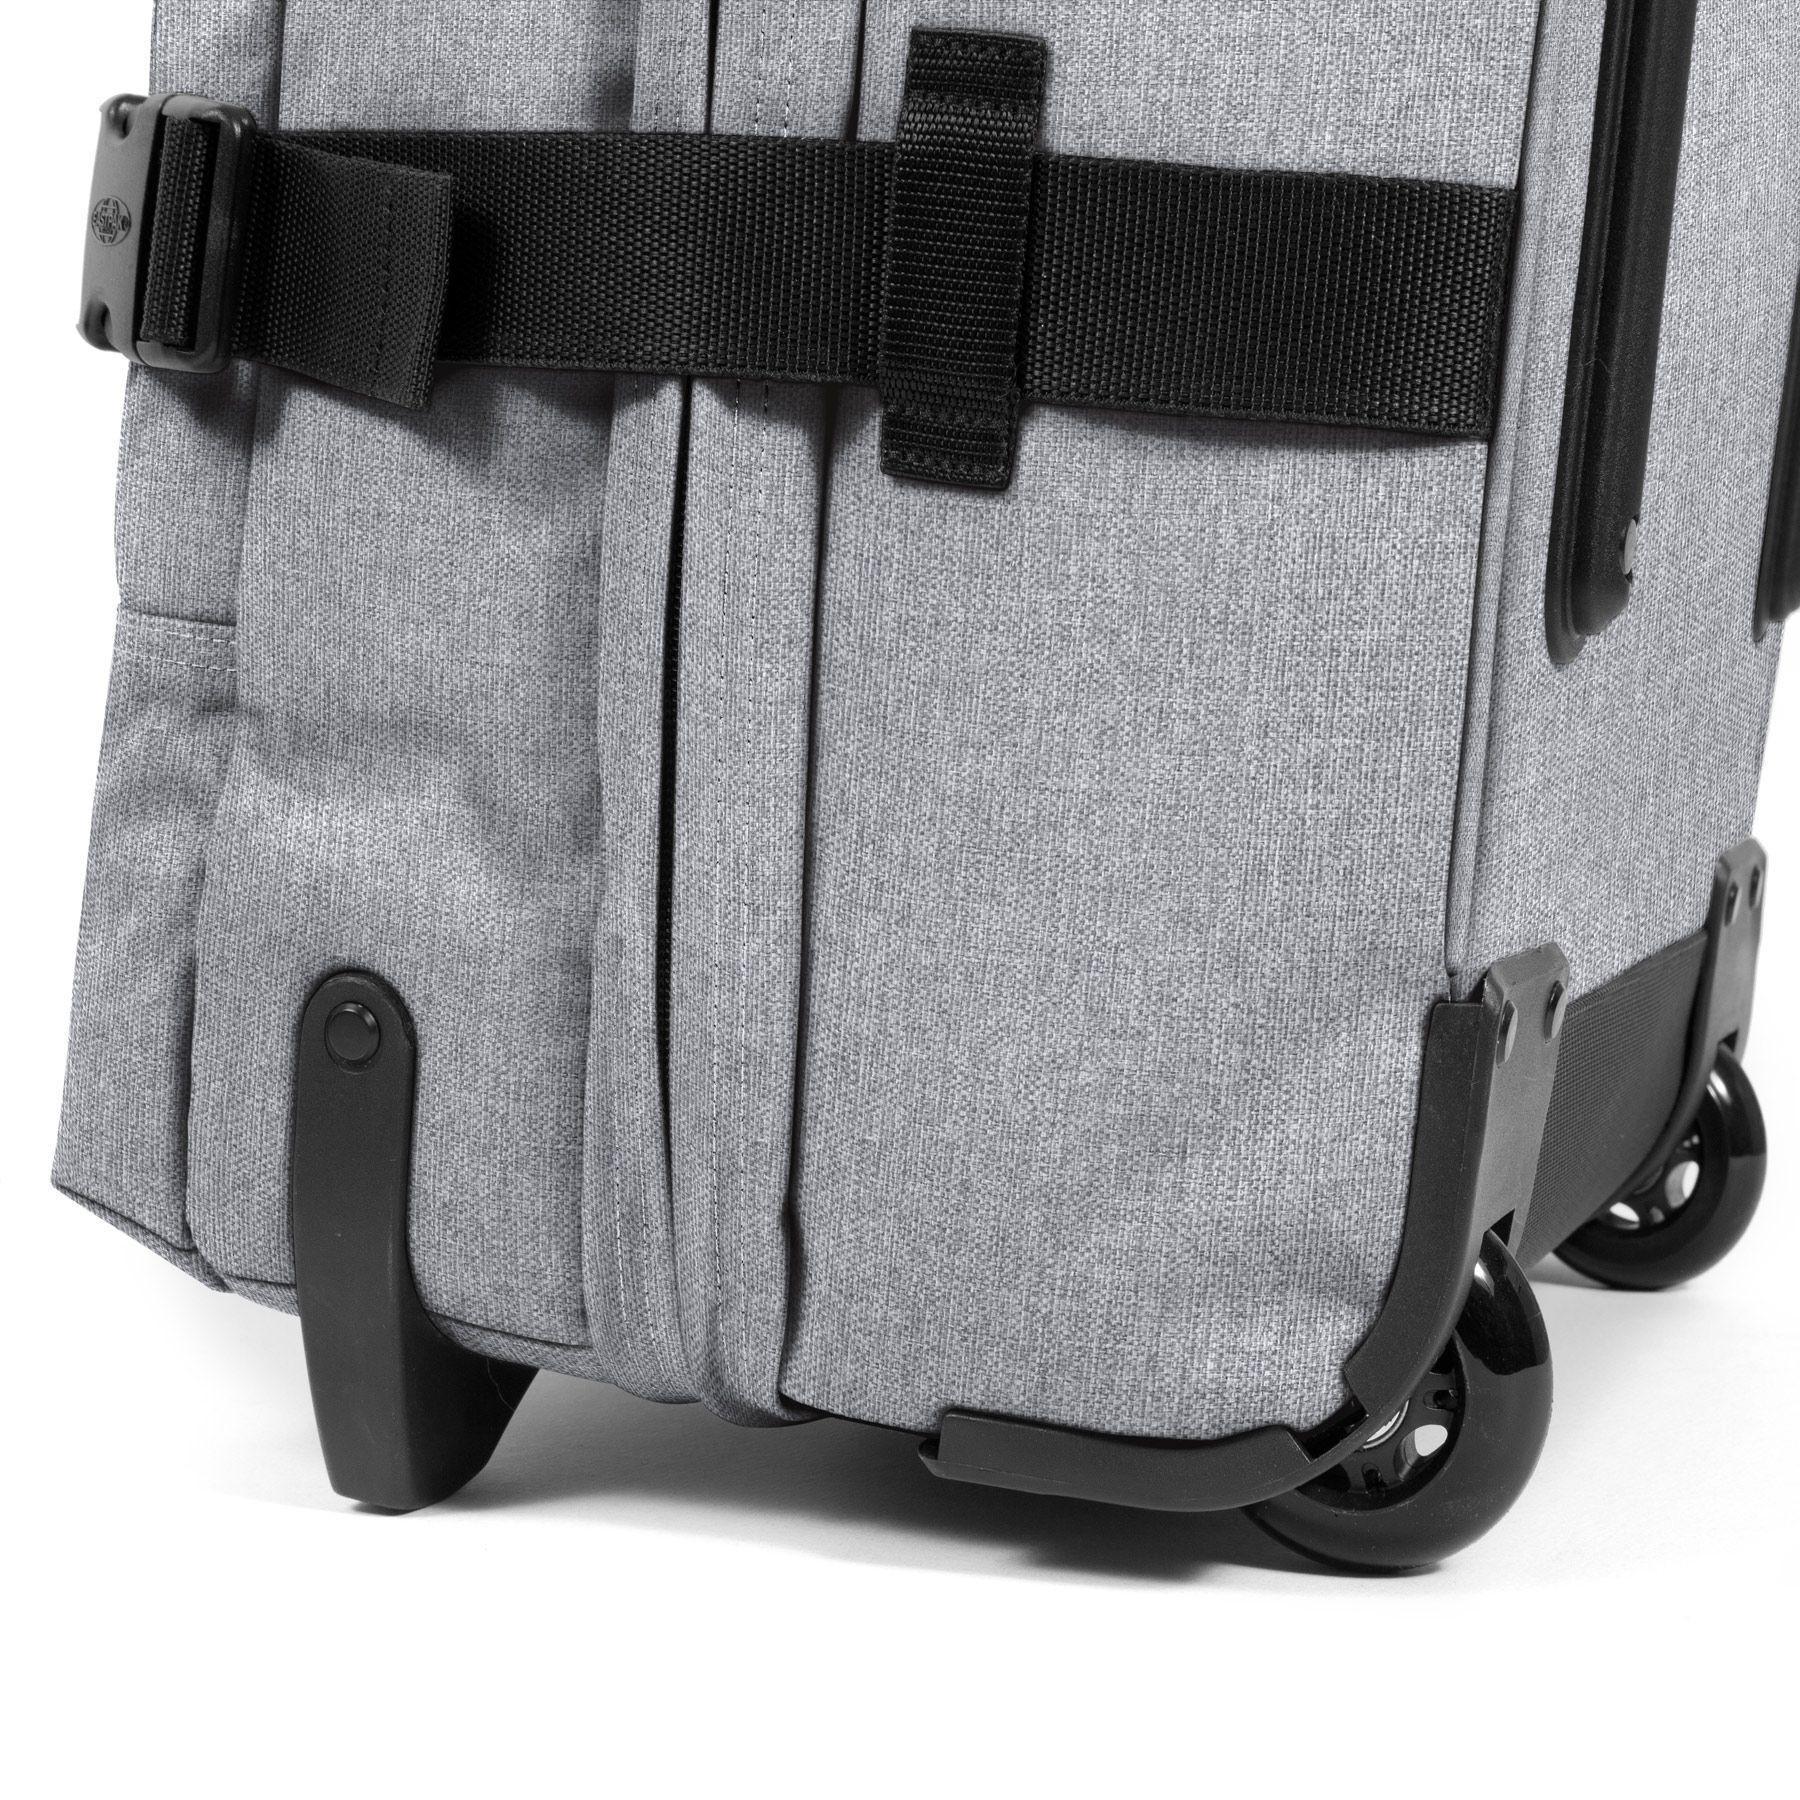 Travel bag Eastpak Tranverz S